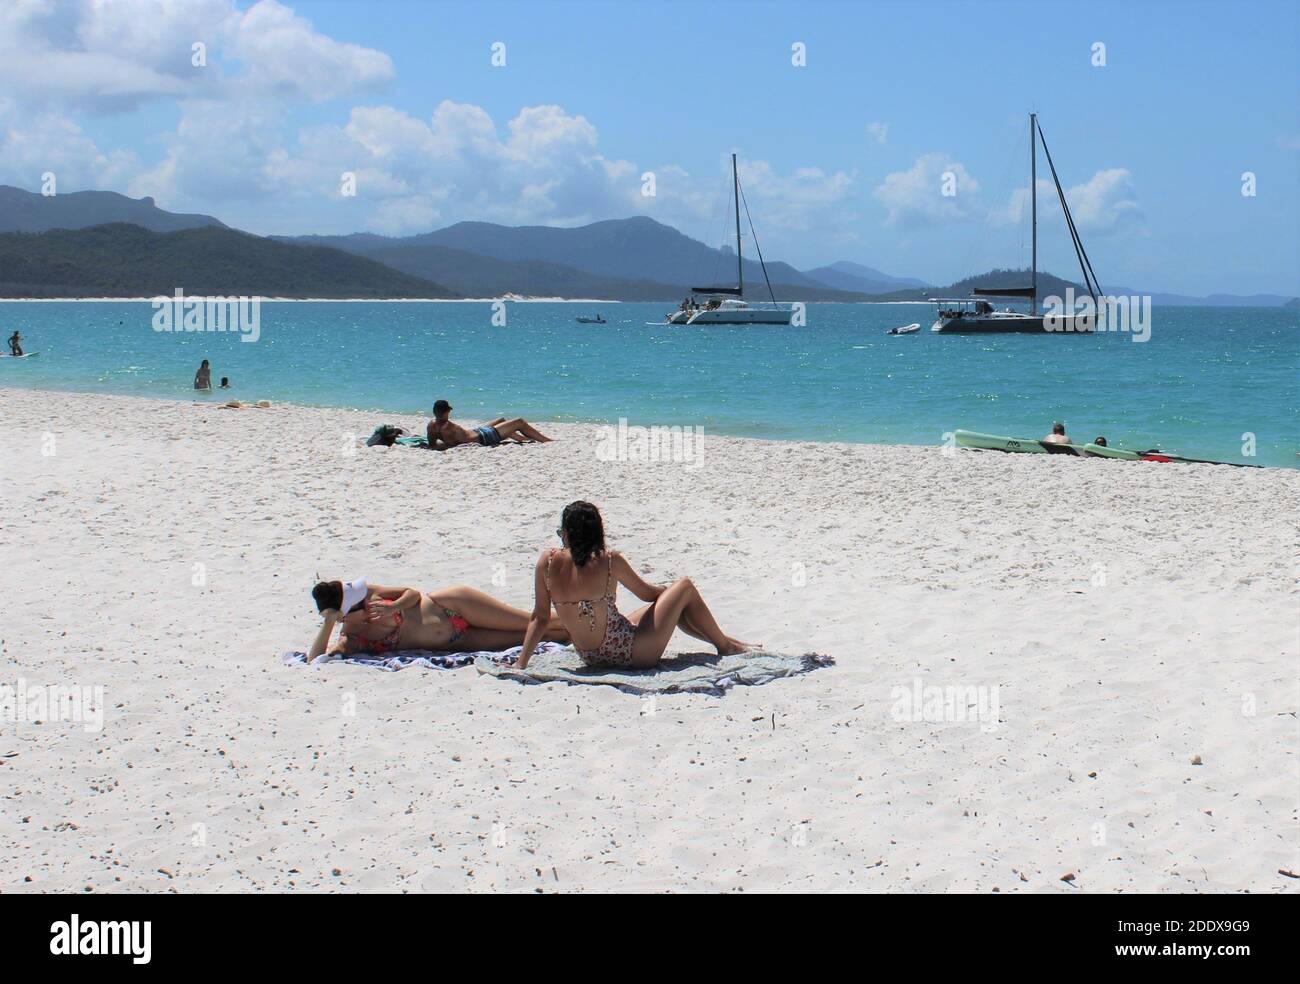 Vie en plein air en Australie, bains de soleil sur Whitehaven Beach, Whitsunday Island, Queensland, Australie. Banque D'Images